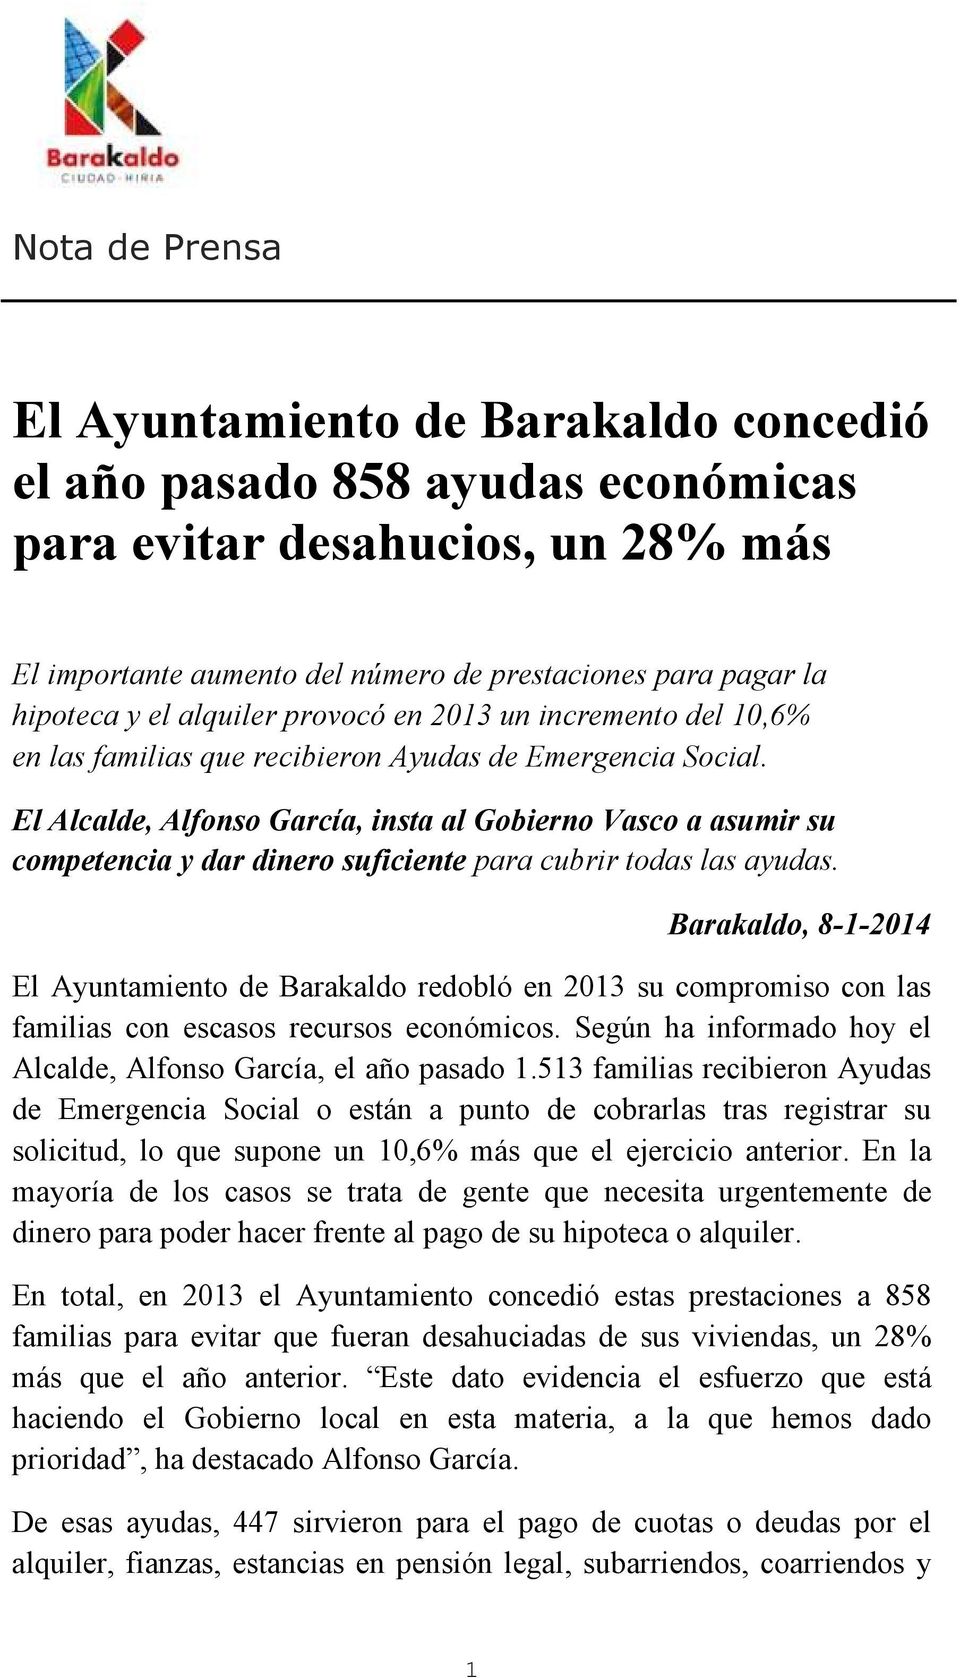 El Alcalde, Alfonso García, insta al Gobierno Vasco a asumir su competencia y dar dinero suficiente para cubrir todas las ayudas.